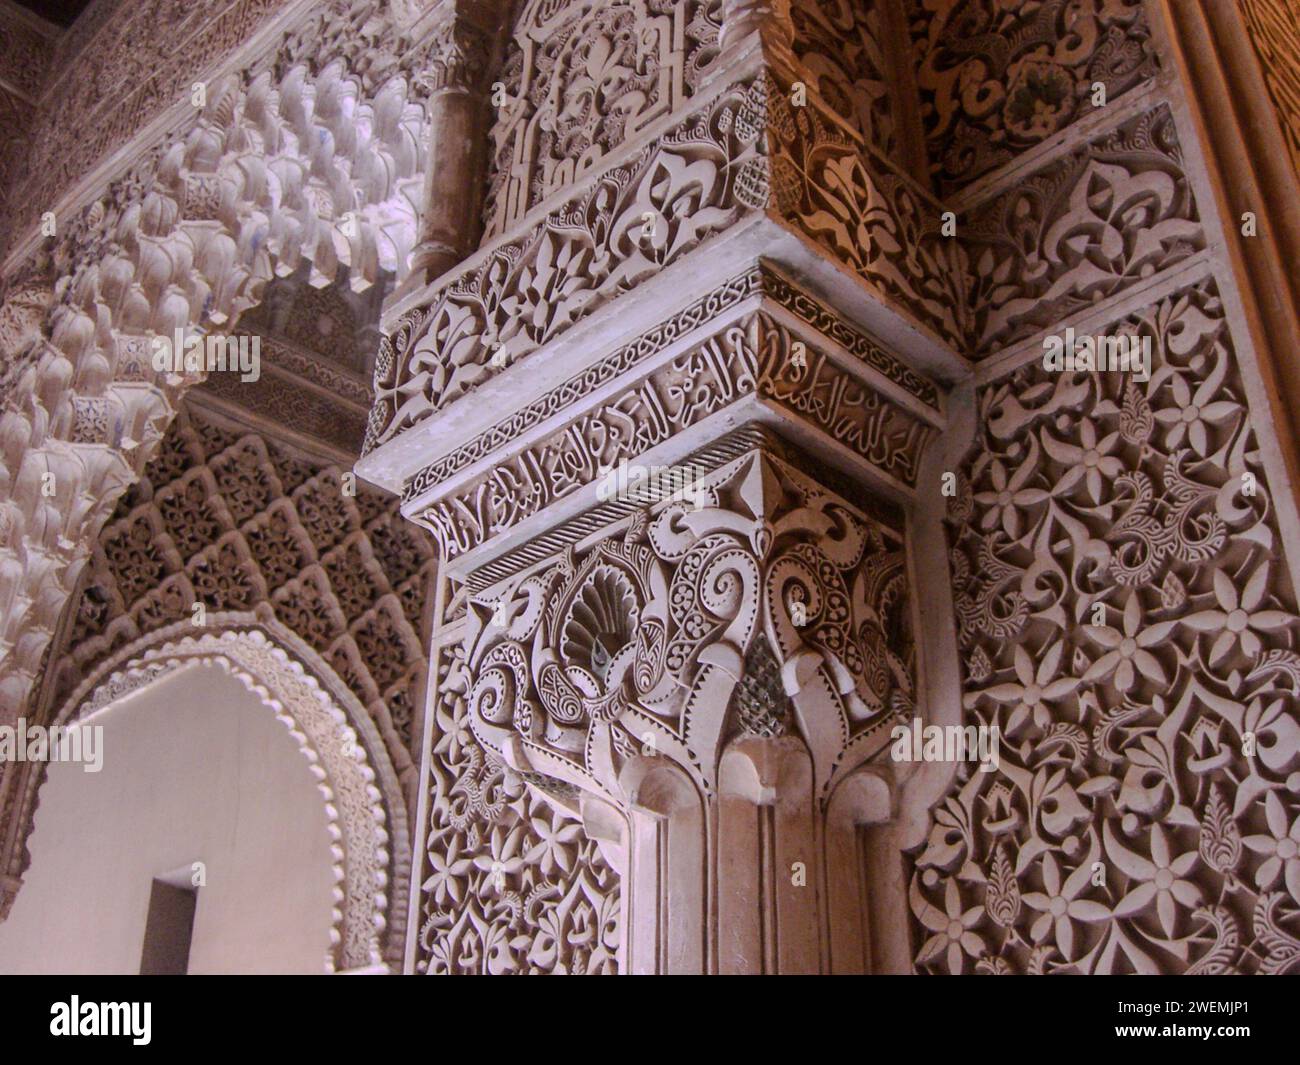 Stuc sculpté dans le complexe du palais de l'Alhambra, un msterpeice de l'architecture islamique mauresque. Grenade, Espagne Banque D'Images